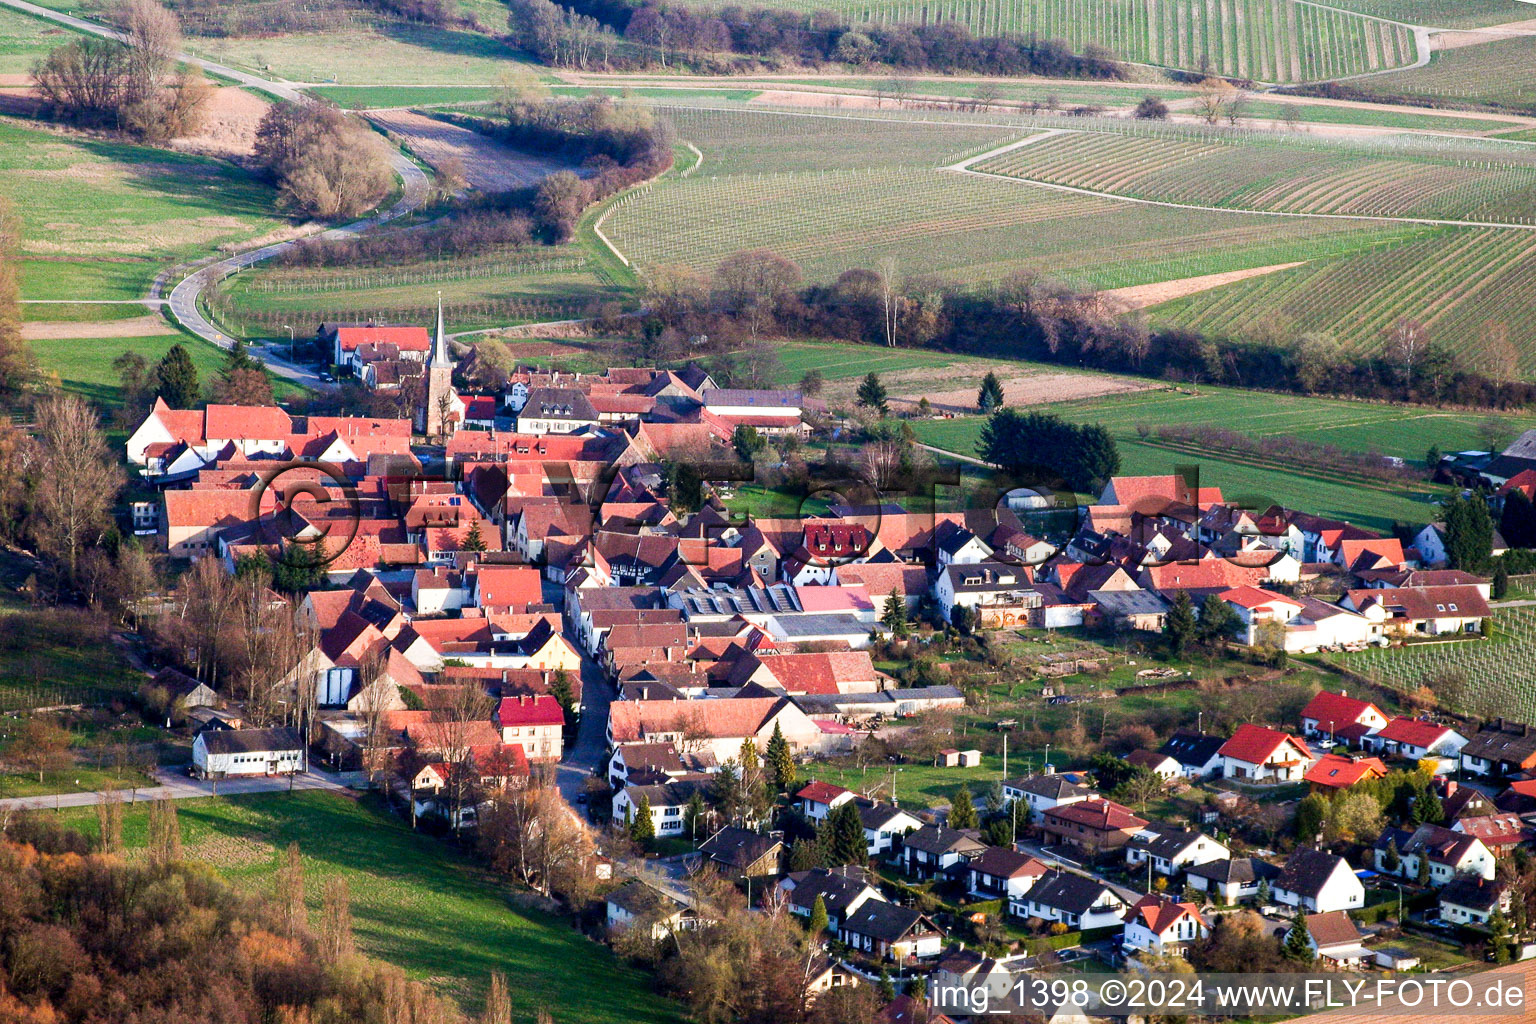 Village - view on the edge of agricultural fields and farmland in the district Heuchelheim in Heuchelheim-Klingen in the state Rhineland-Palatinate